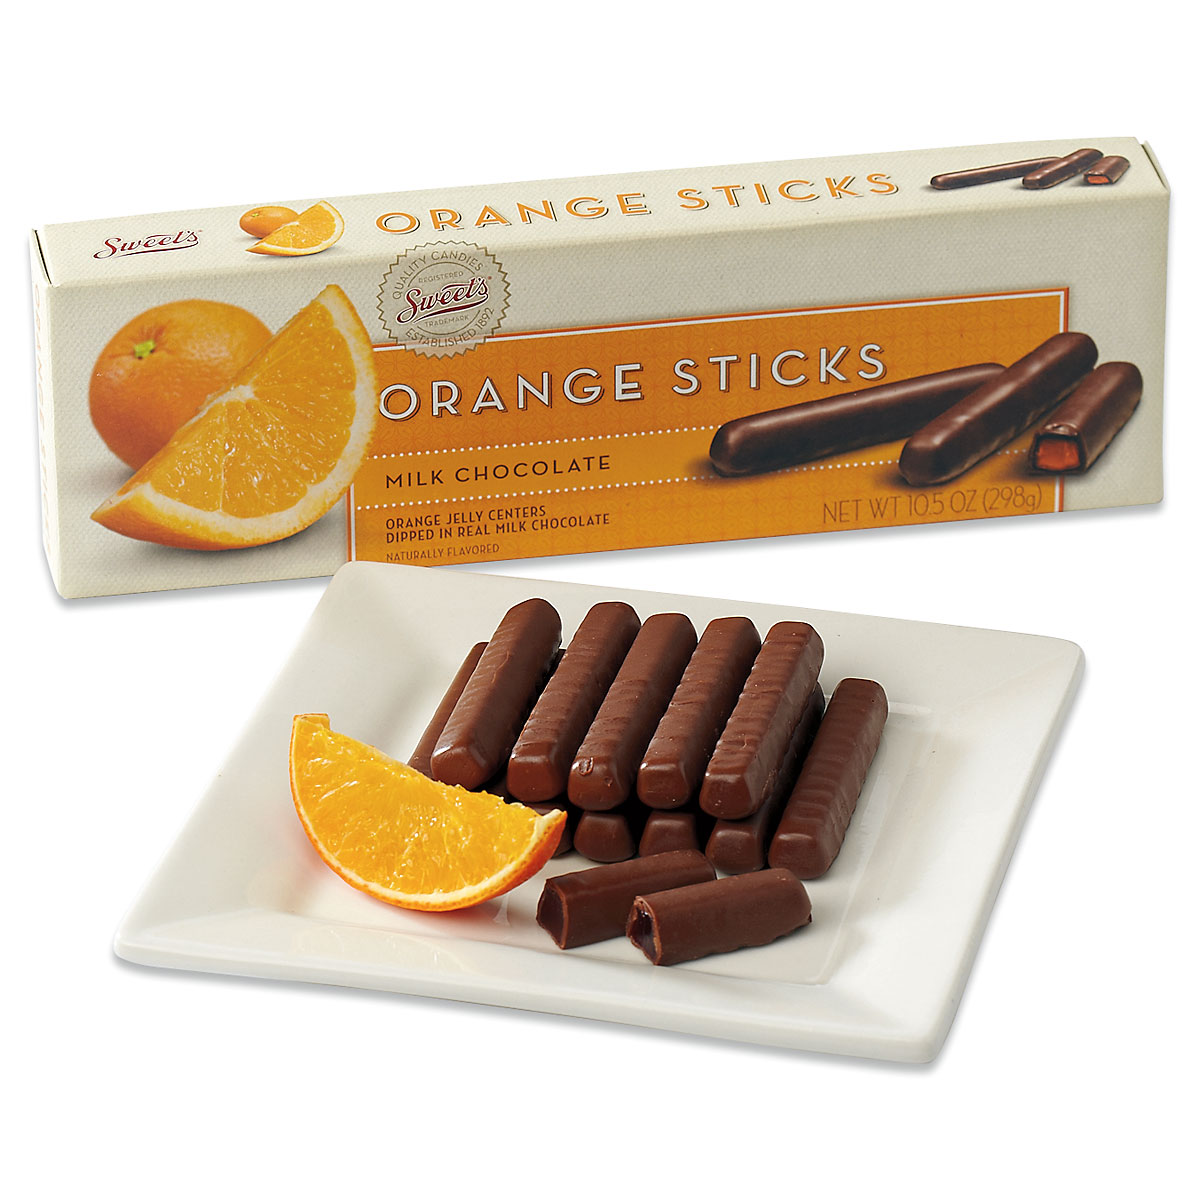 Sweet's Chocolate Orange Sticks, Milk, 10.5-Ounce (Pack of 2), 2 pack -  Harris Teeter